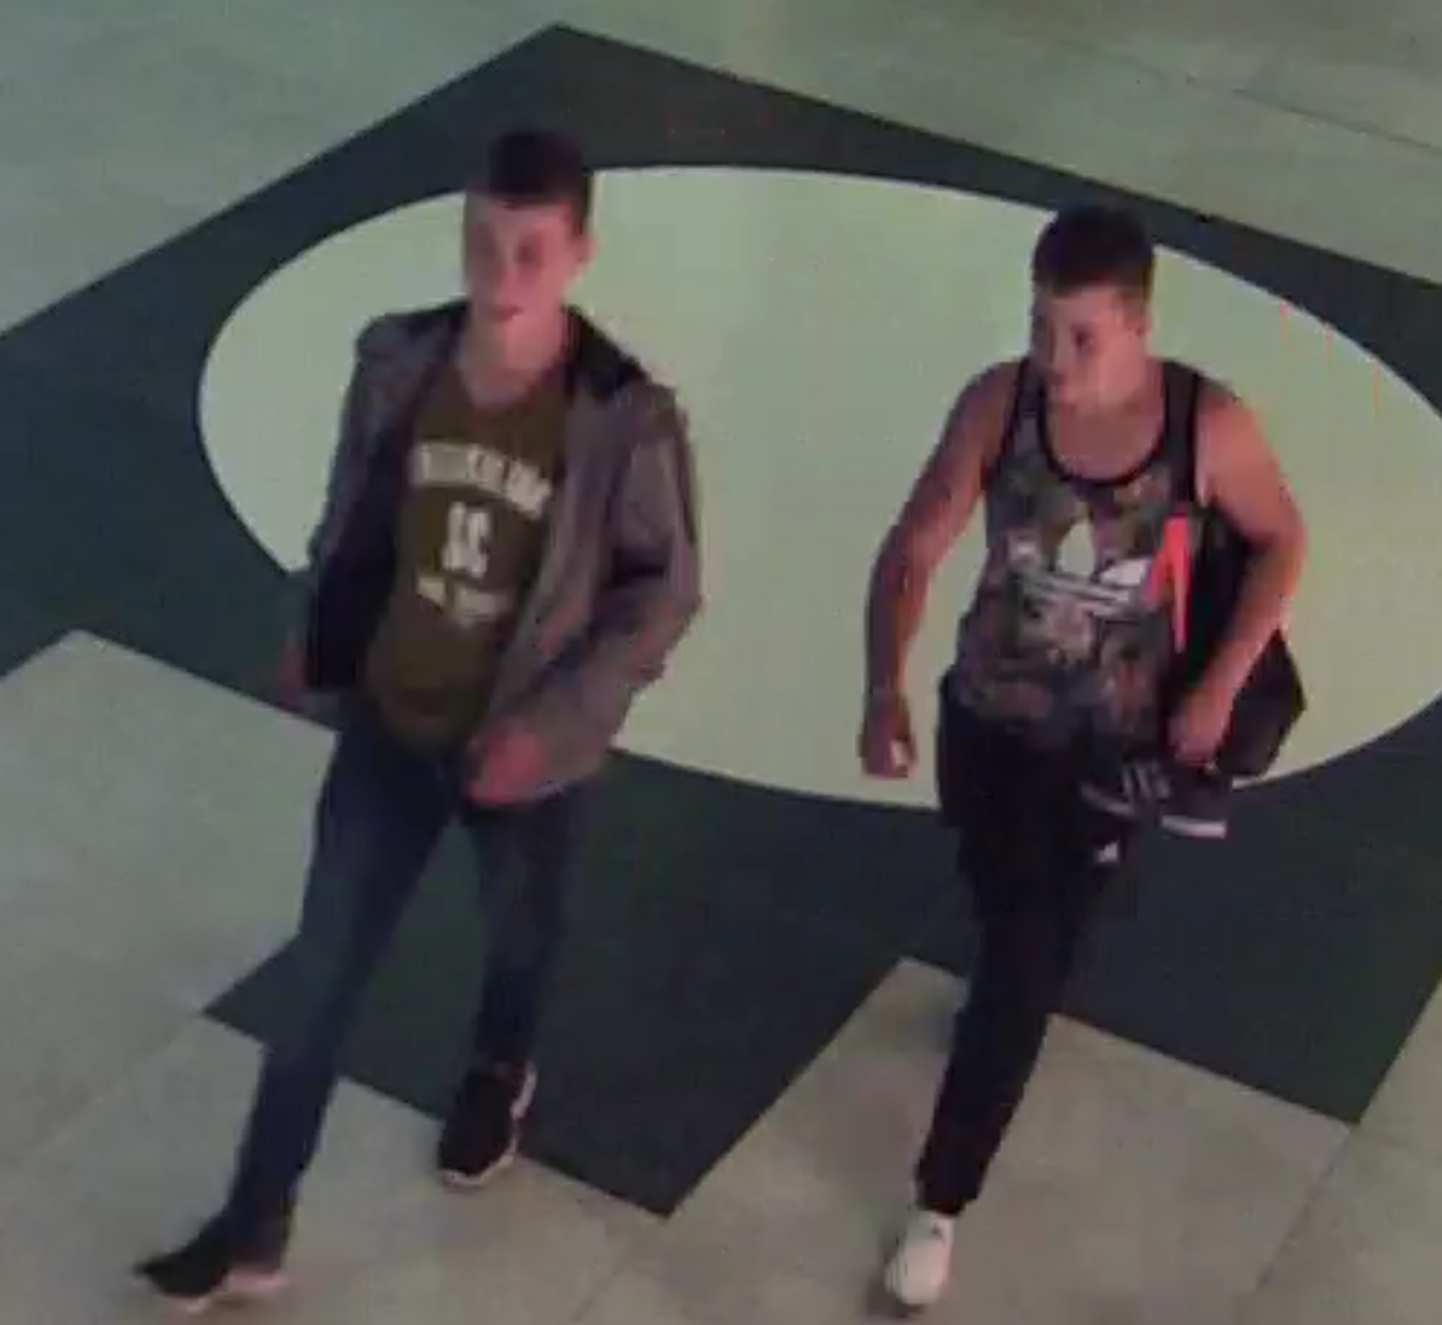 Полиция просит помощи в установлении личностей двух молодых людей, запечатленных на фотографии.